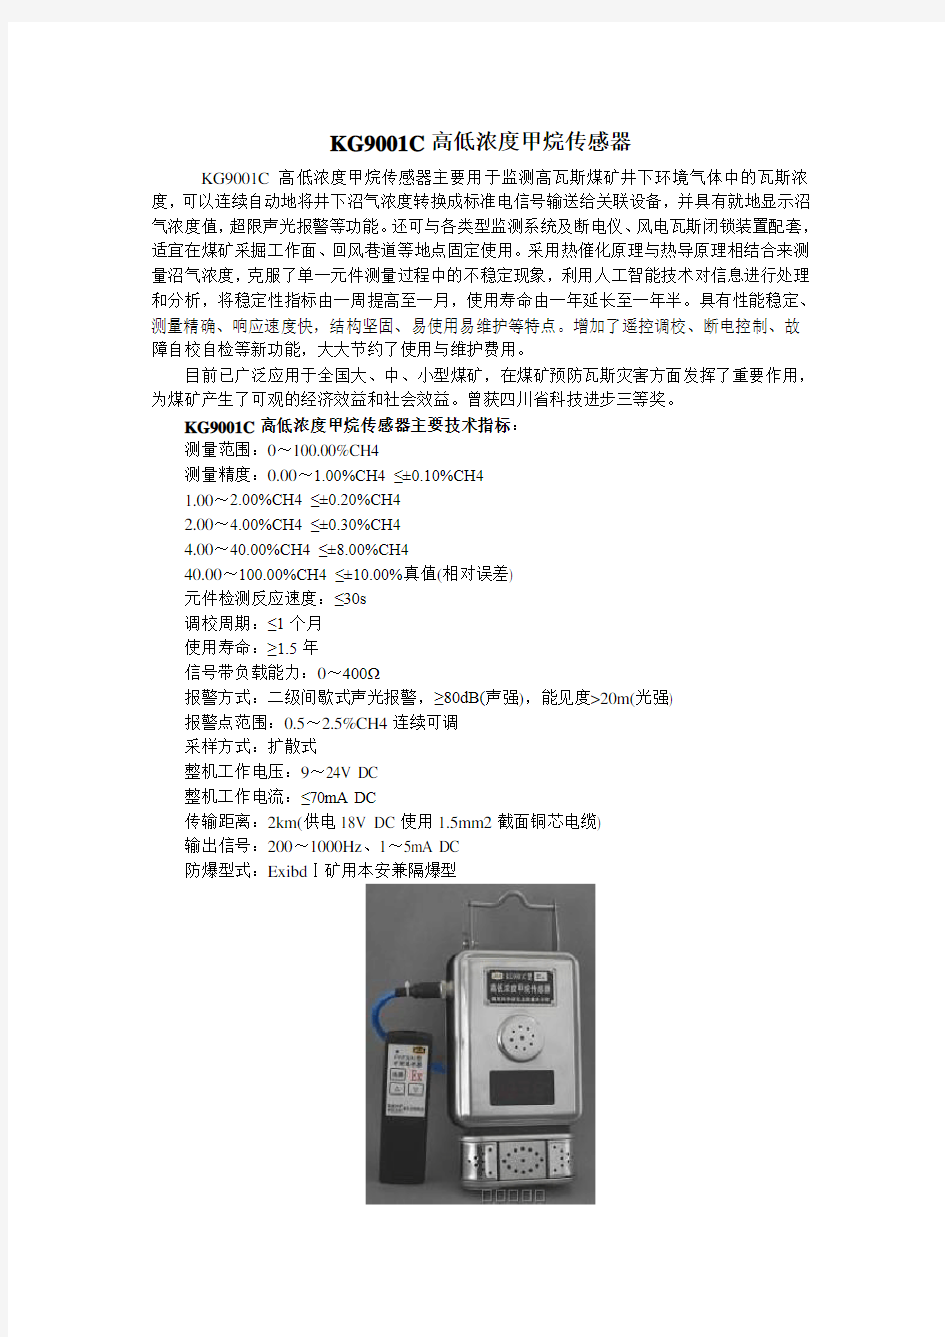 KG9001C甲烷传感器说明书